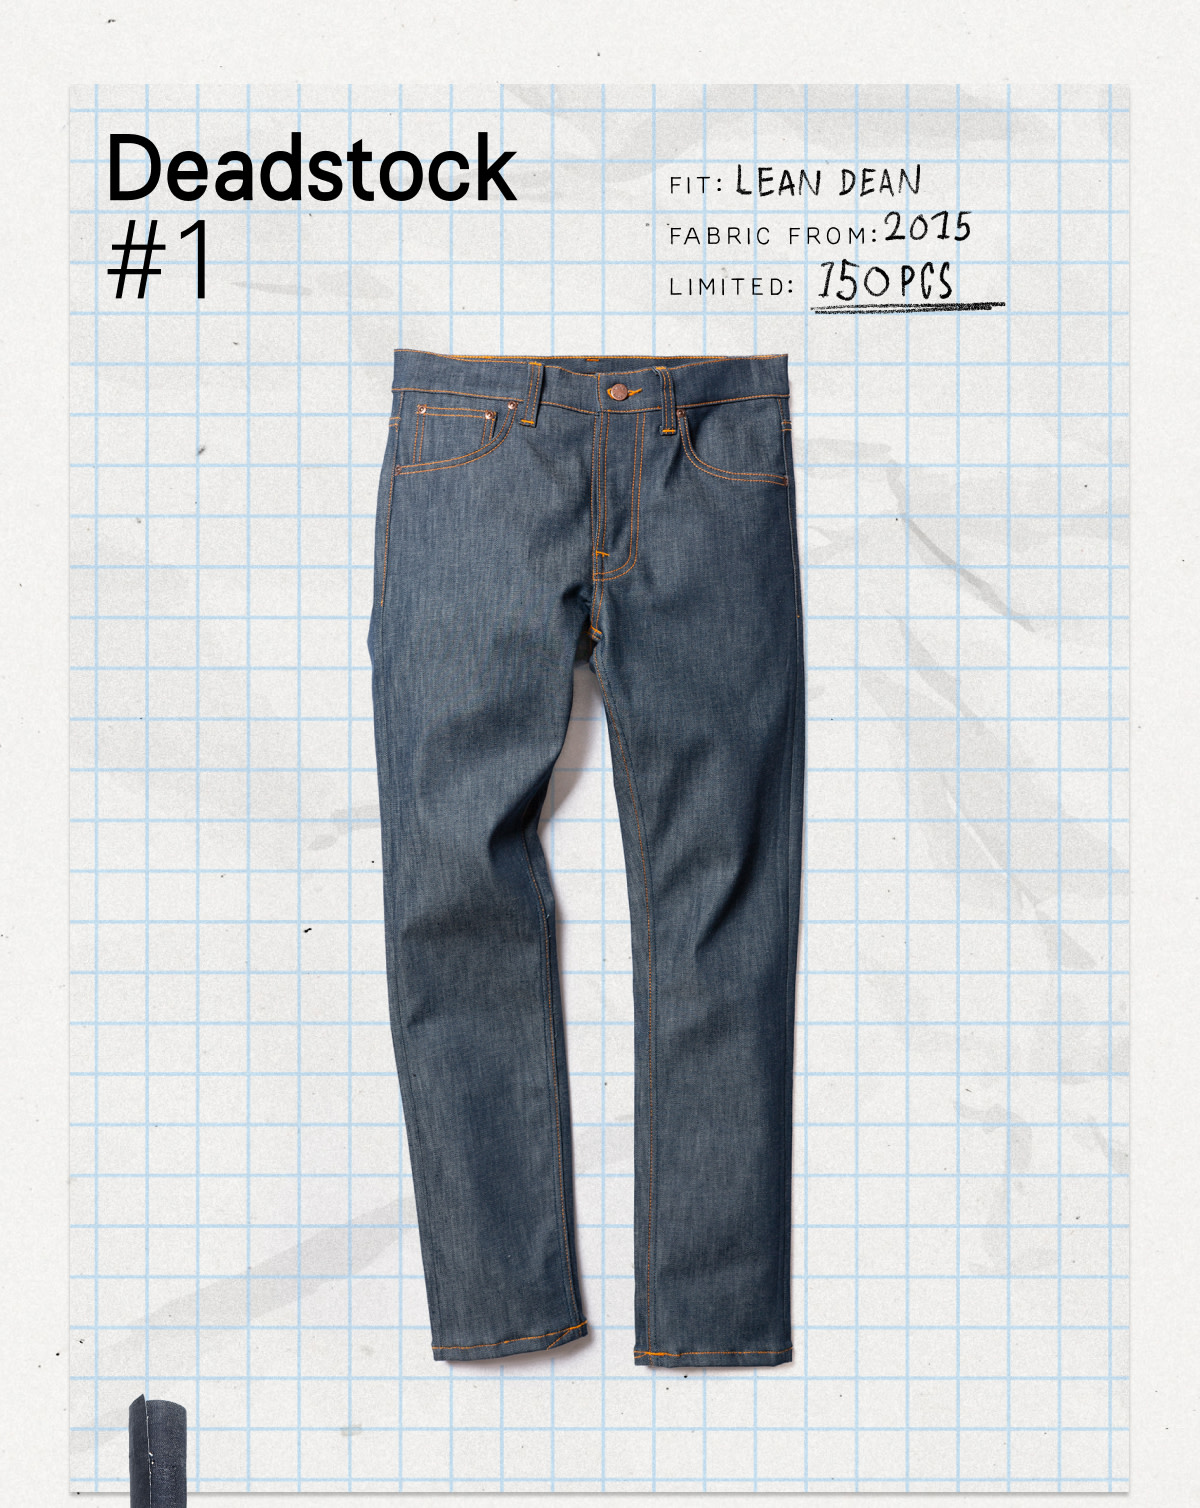 Deadstock 1 Lean Dean